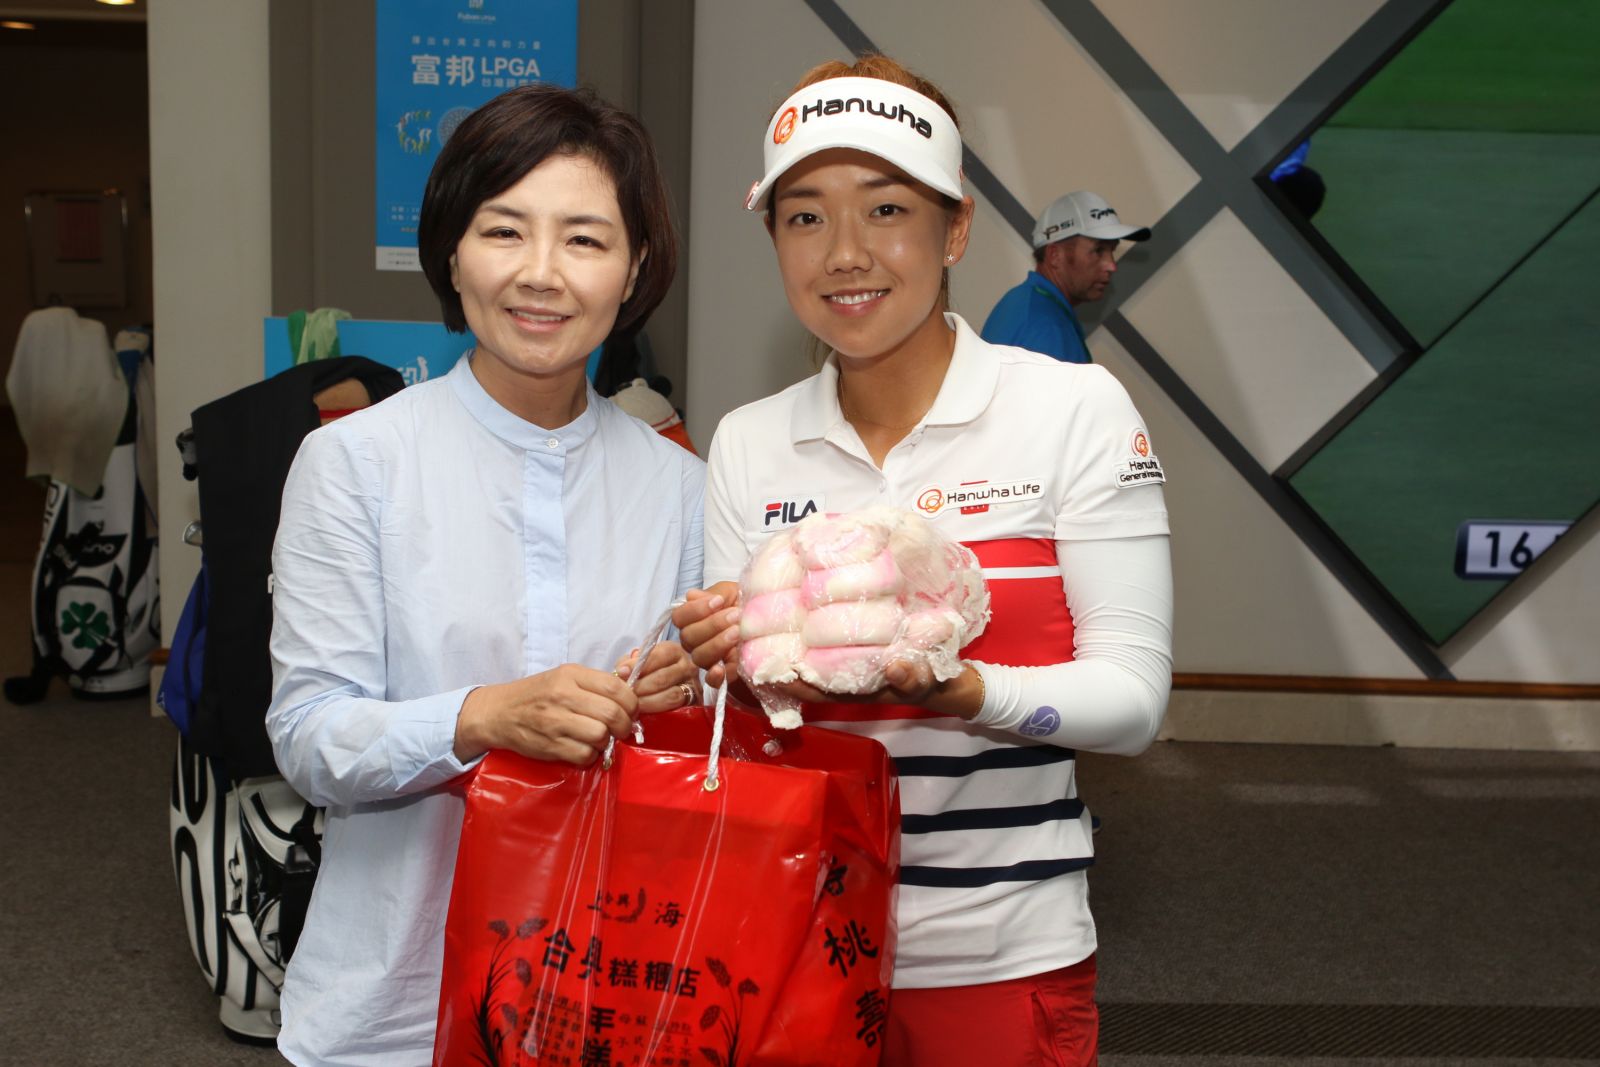 南韓女將申珍妮(Jenny Shin) 的媽媽(左)特地從韓國飛來為女兒加油。